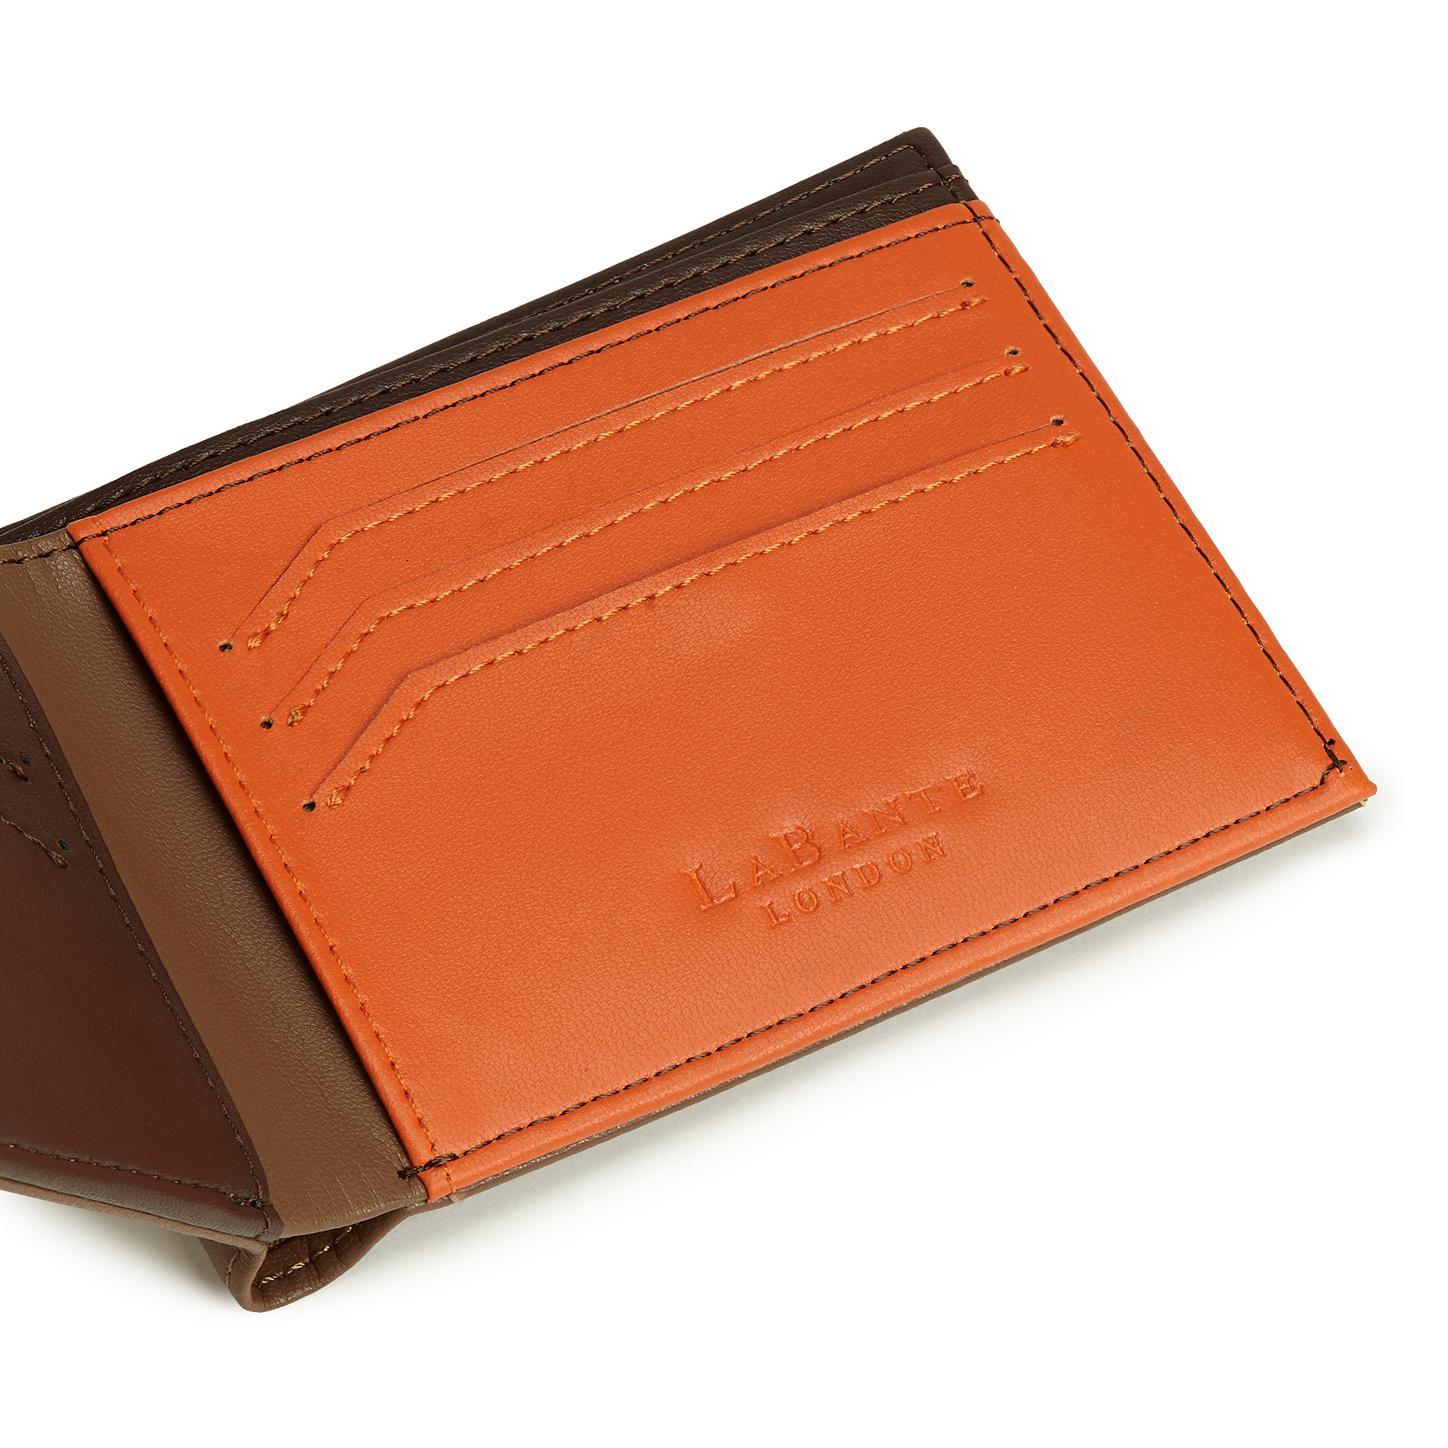 Buy Men Black Solid Leather Wallet Online - 705007 | Allen Solly